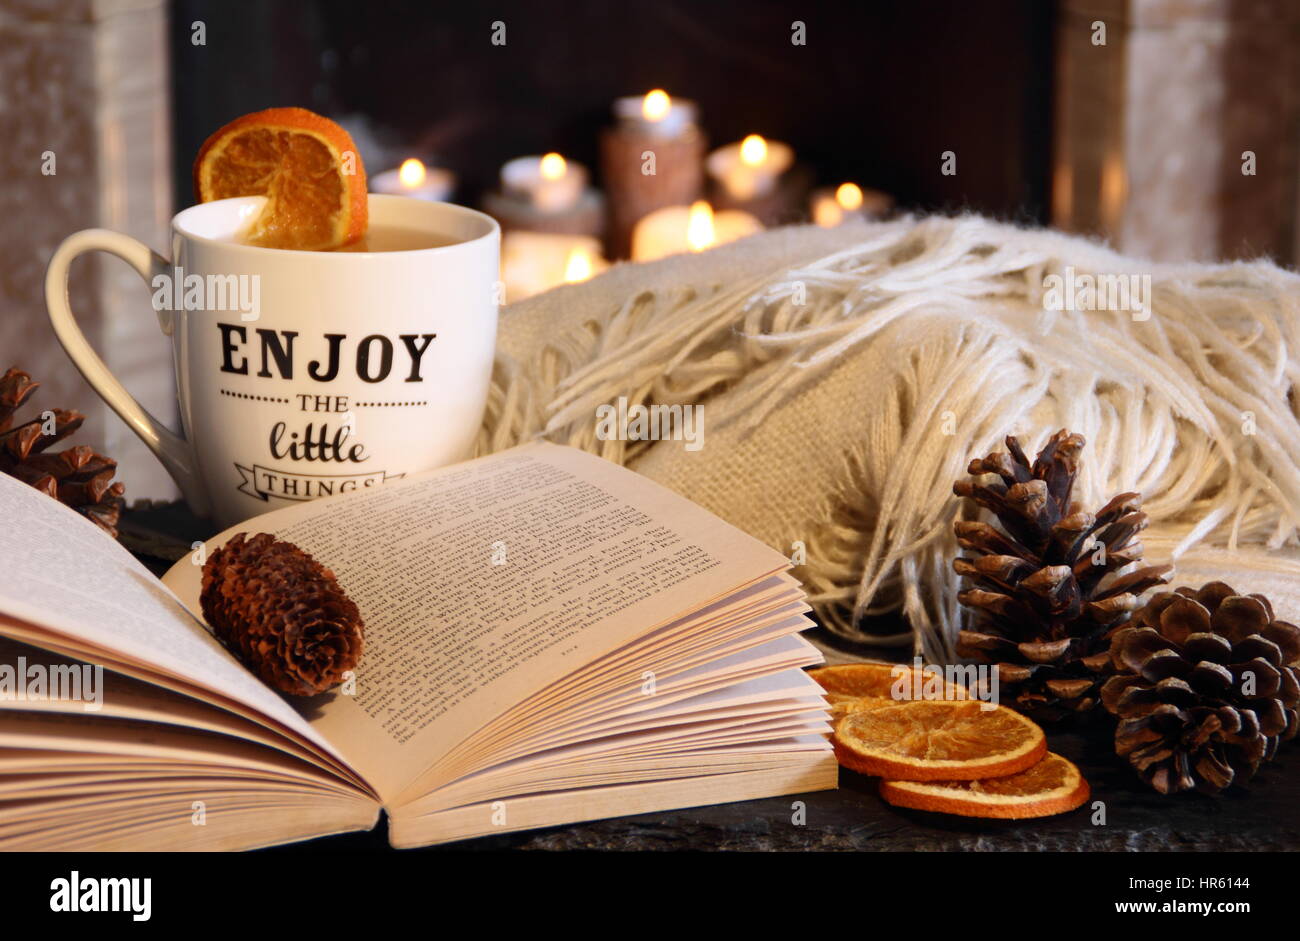 La lecture d'un livre par une cheminée à foyer ouvert dans une ambiance hygge inspiré English salon avec une boisson chaude et une couverture (jet) en automne/hiver Banque D'Images